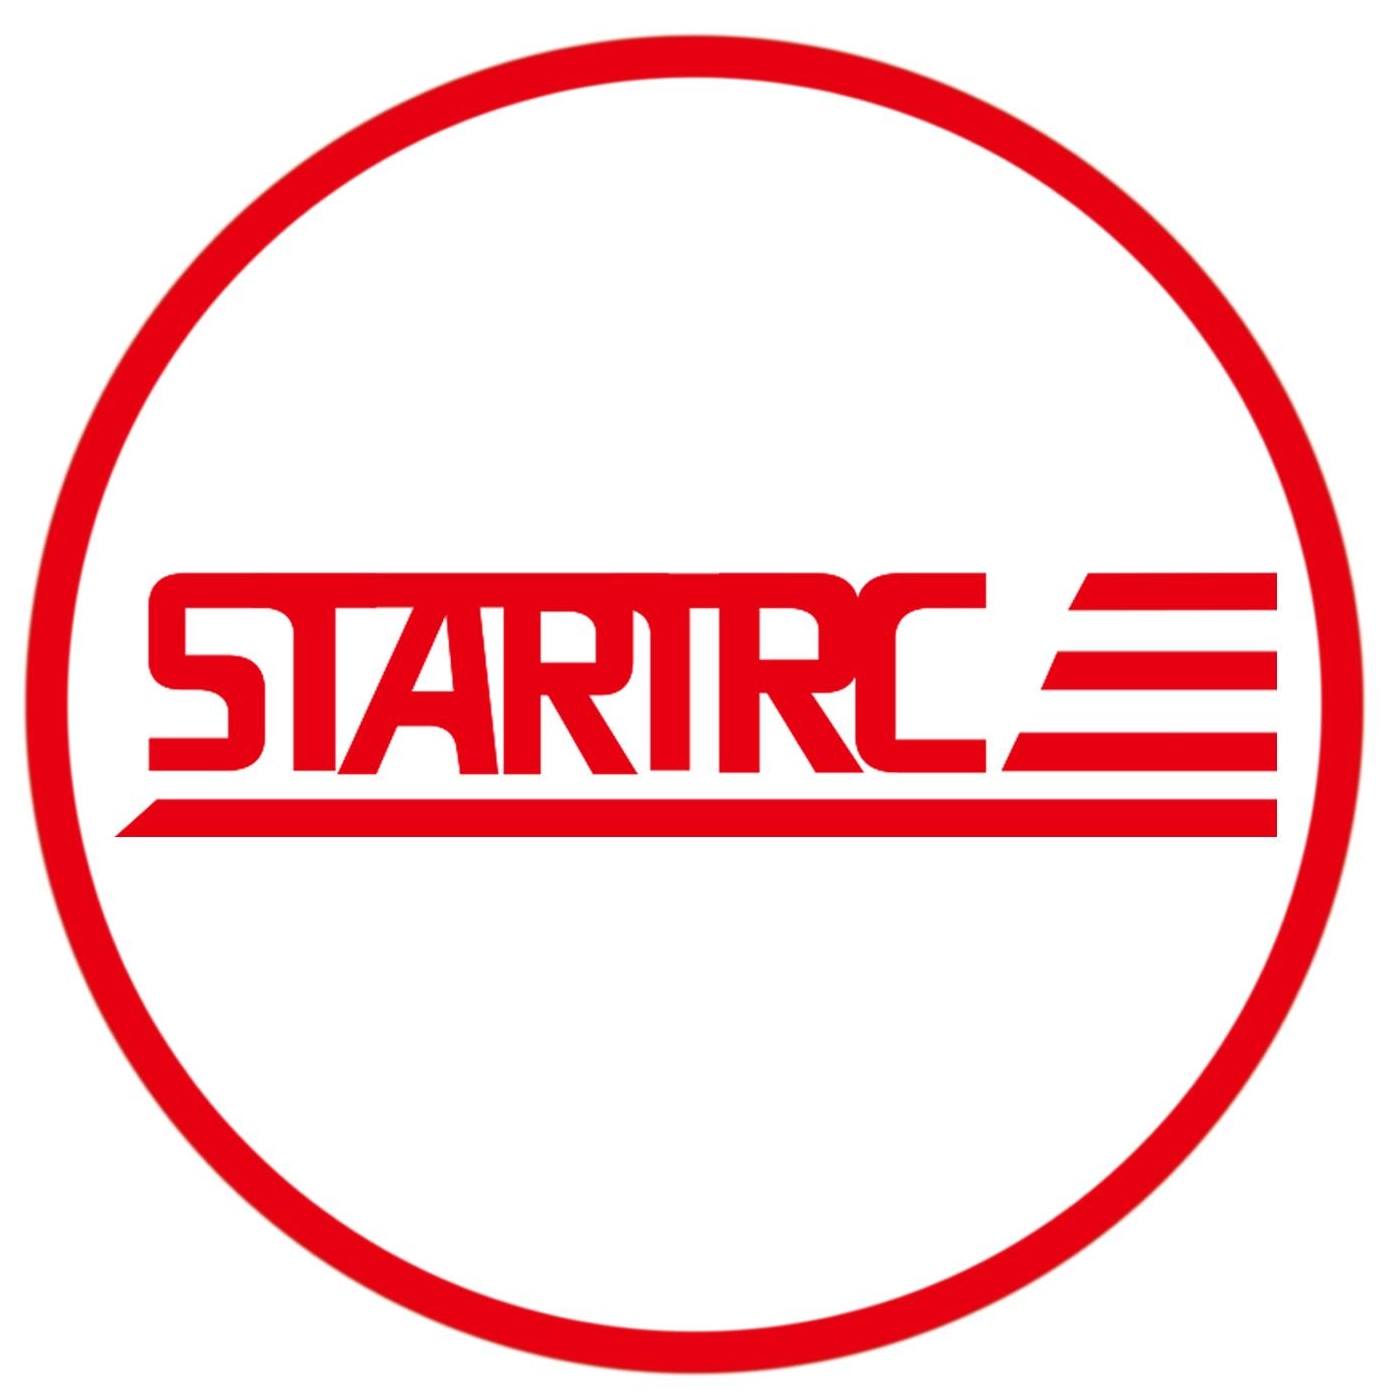 STARTRC